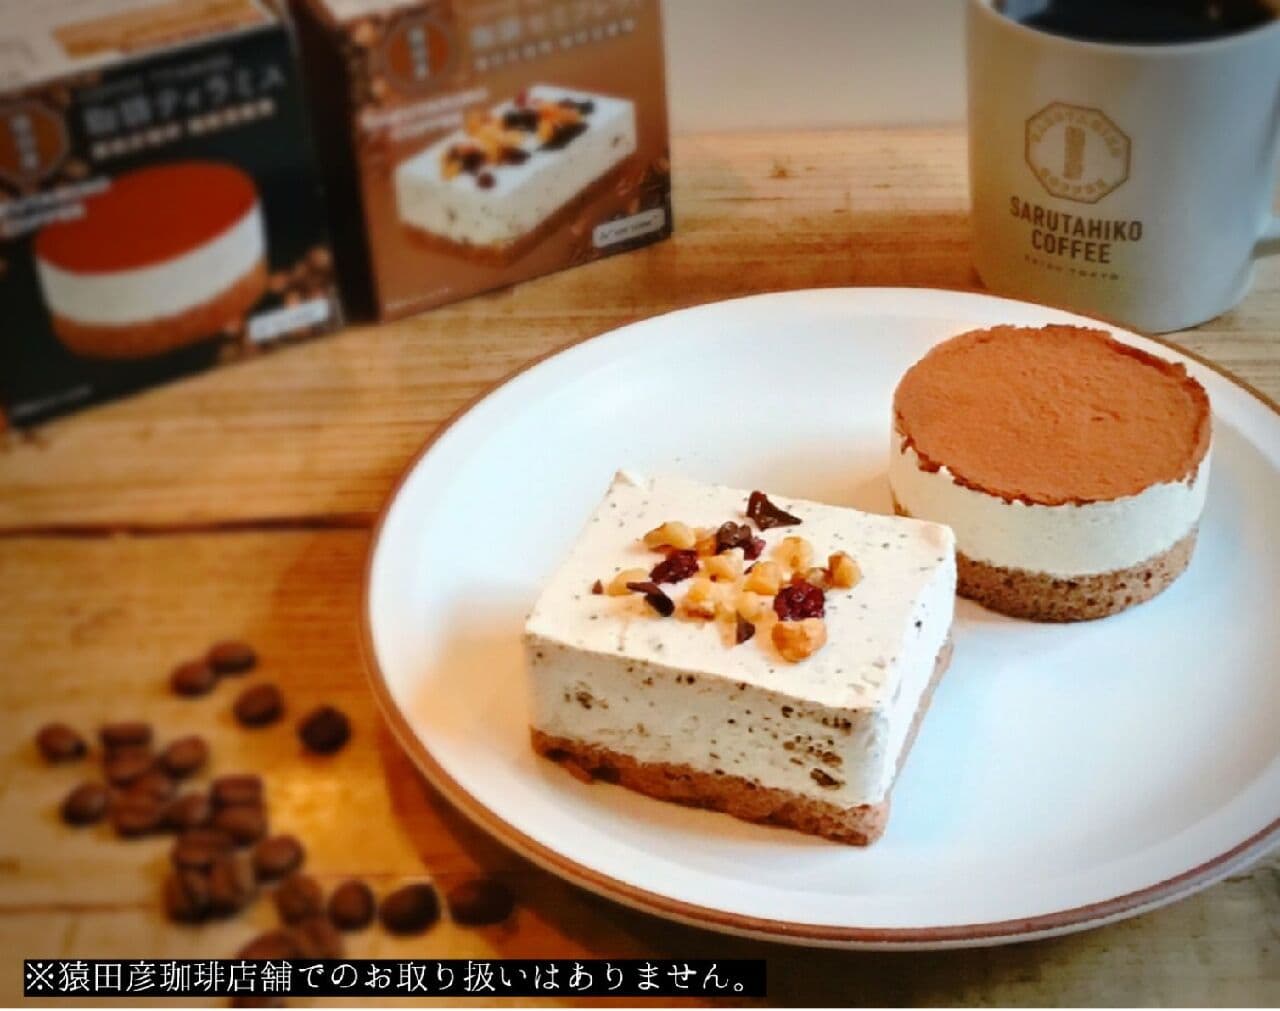 猿田彦珈琲焙煎のコーヒー豆を使用したフローズンデザート発売